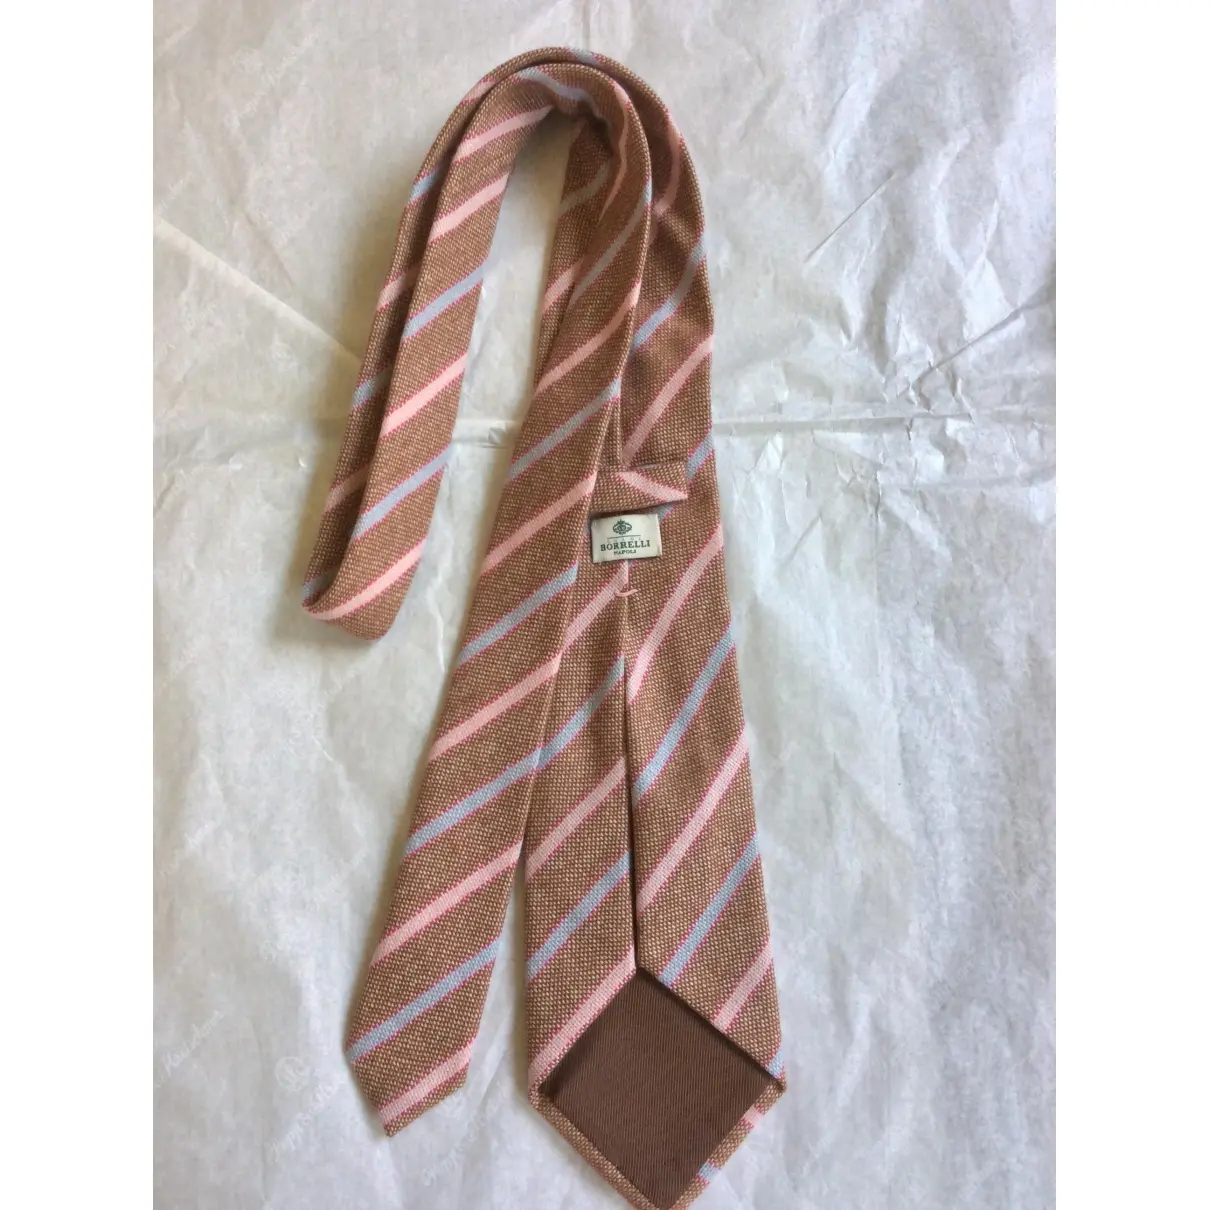 Borrelli Cashmere tie for sale